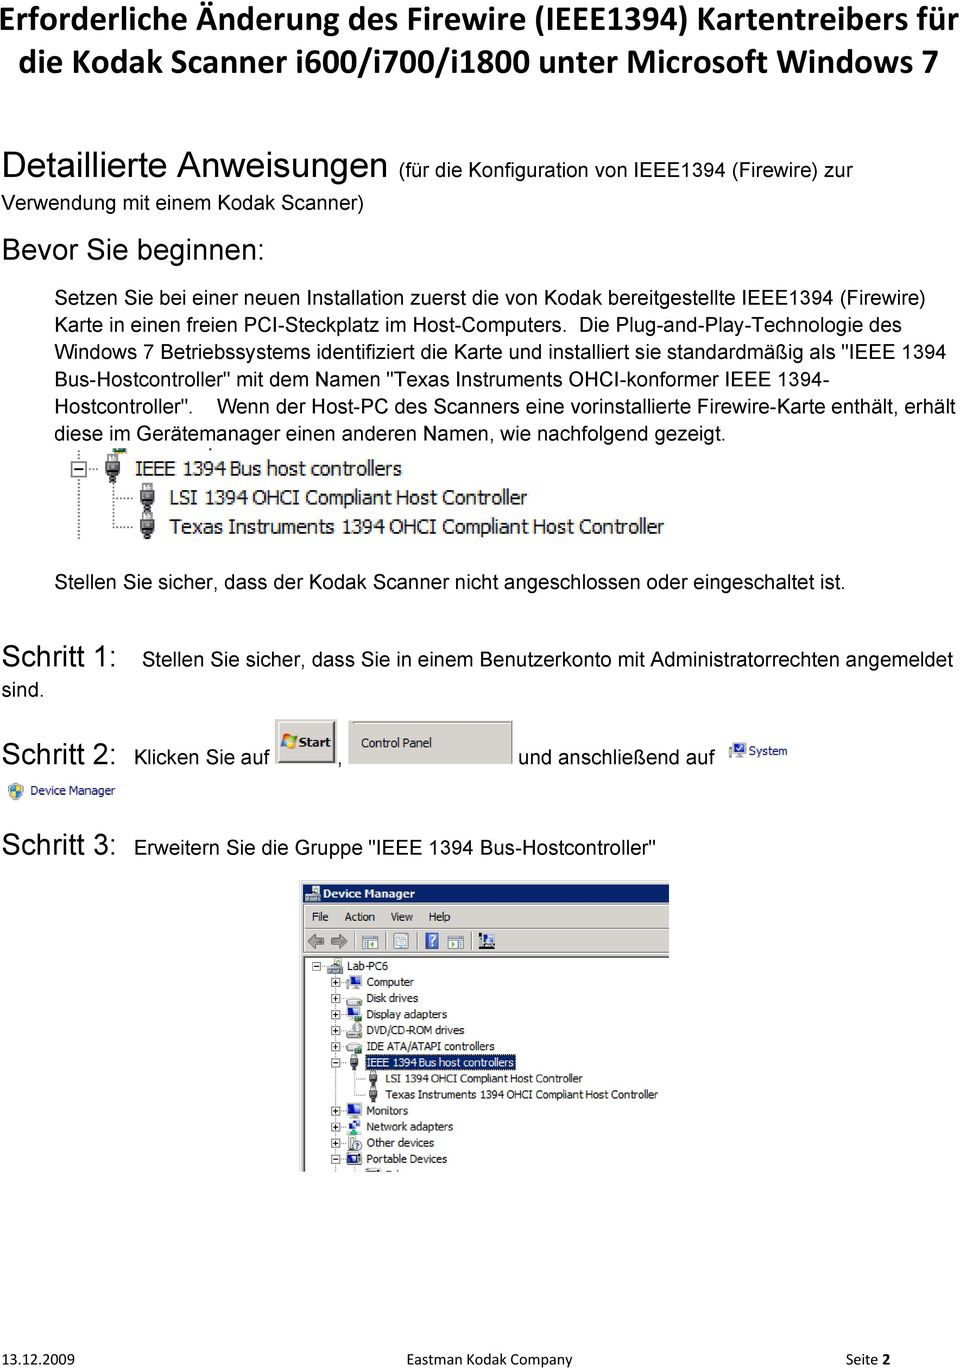 Die Plug-and-Play-Technologie des Windows 7 Betriebssystems identifiziert die Karte und installiert sie standardmäßig als "IEEE 1394 Bus-Hostcontroller" mit dem Namen "Texas Instruments